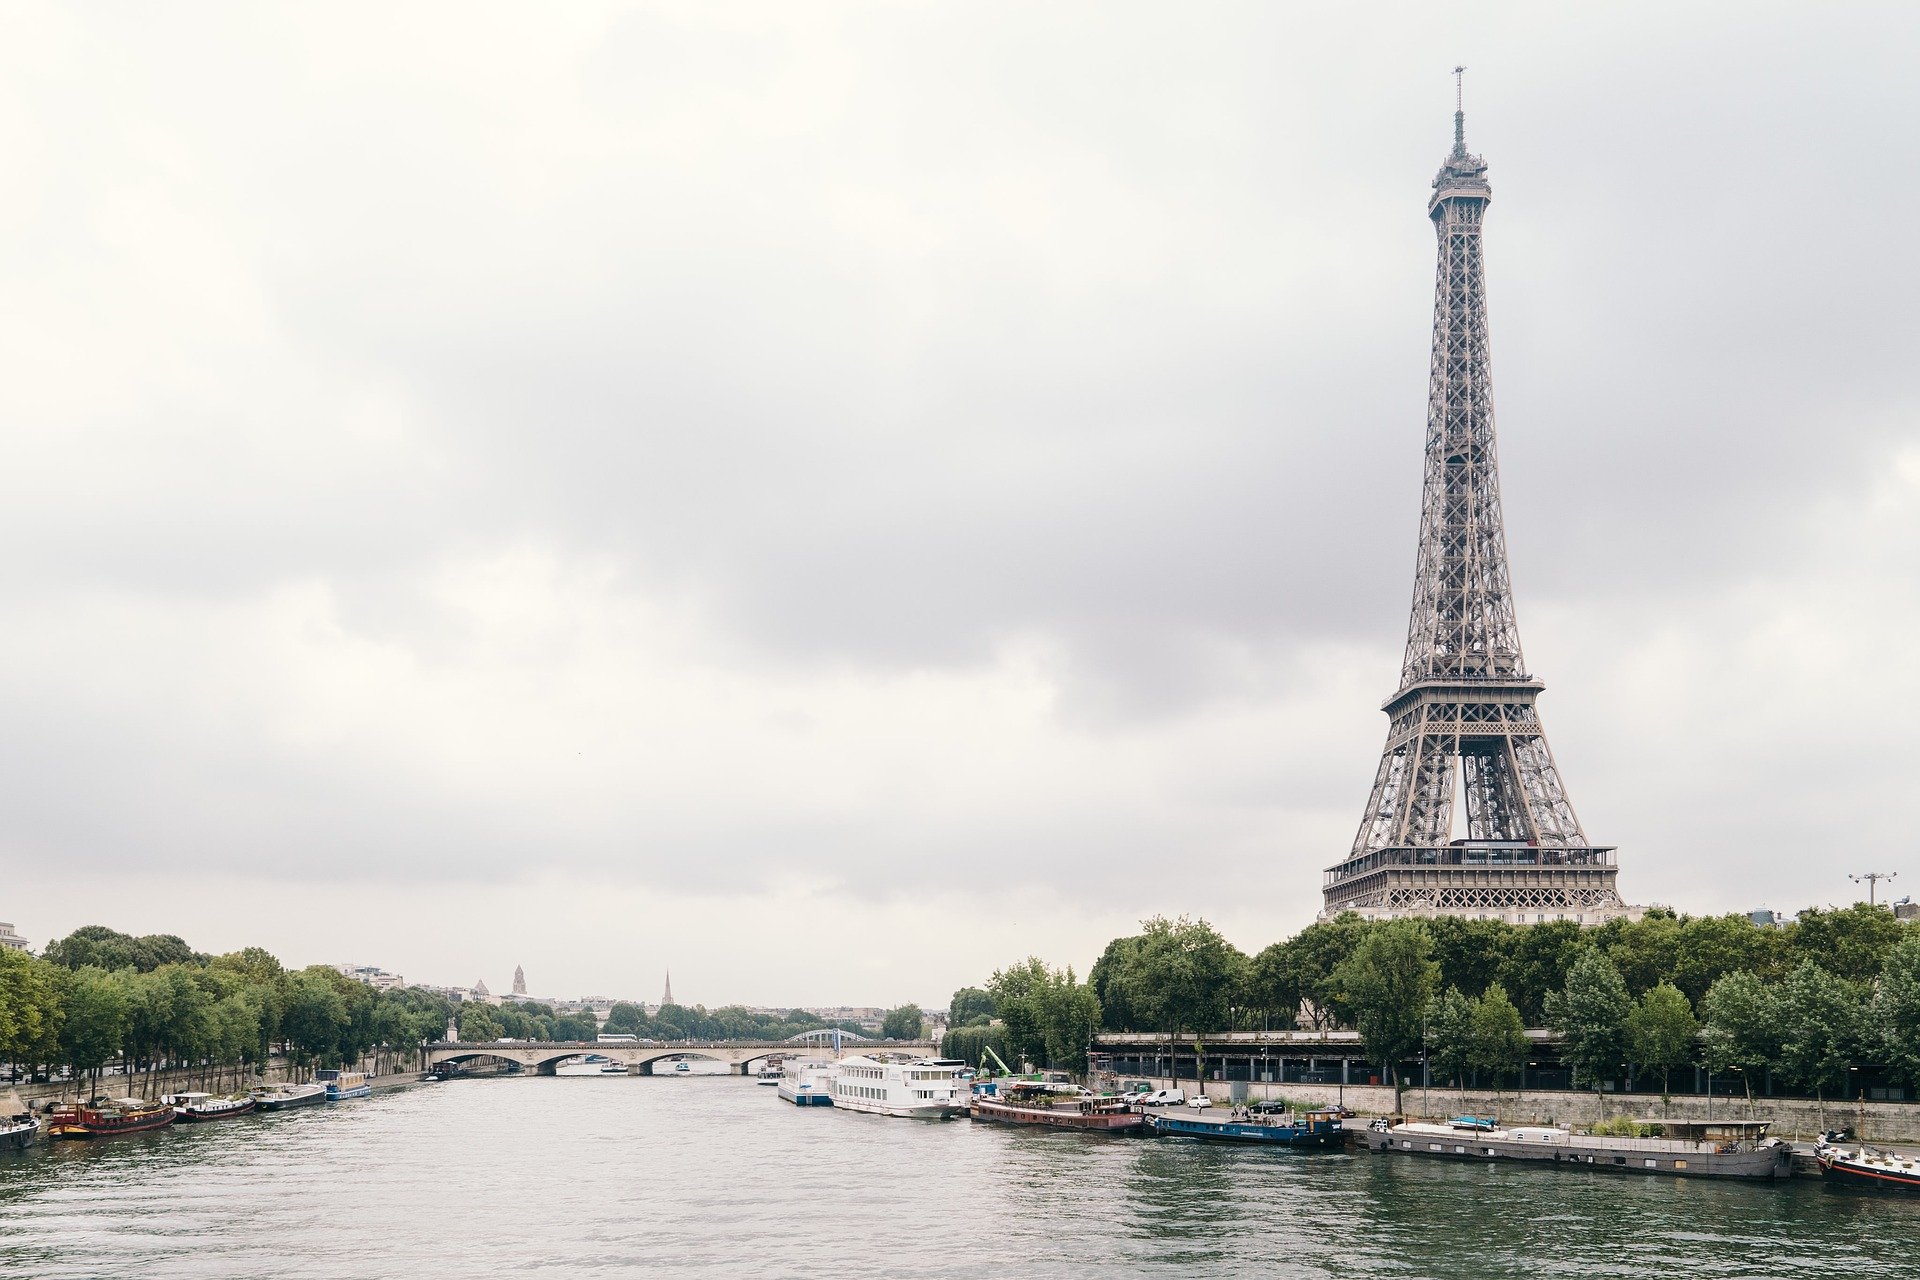 اهم الاماكن السياحية في باريس و طريقة الوصول لها بالمترو و الاحداثيات